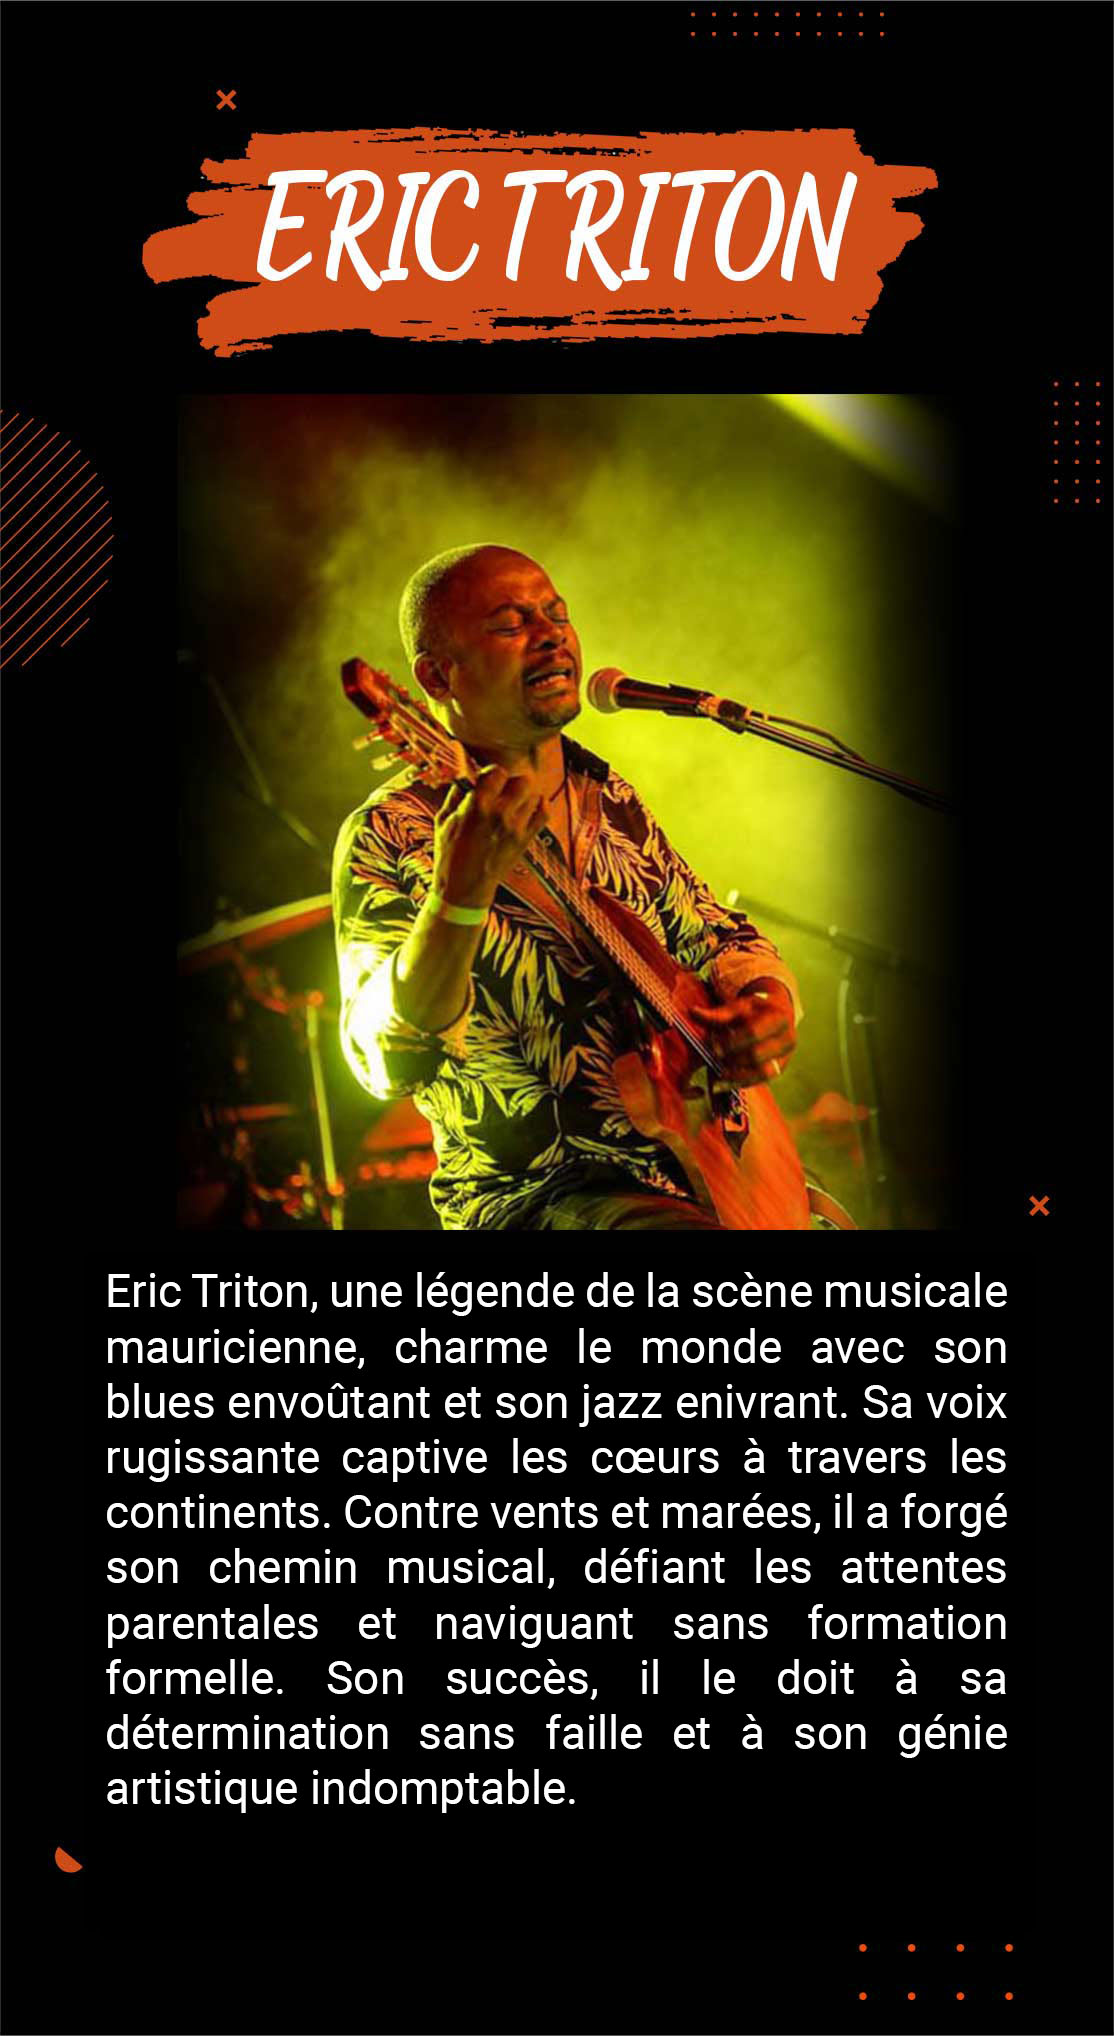 Eric Triton